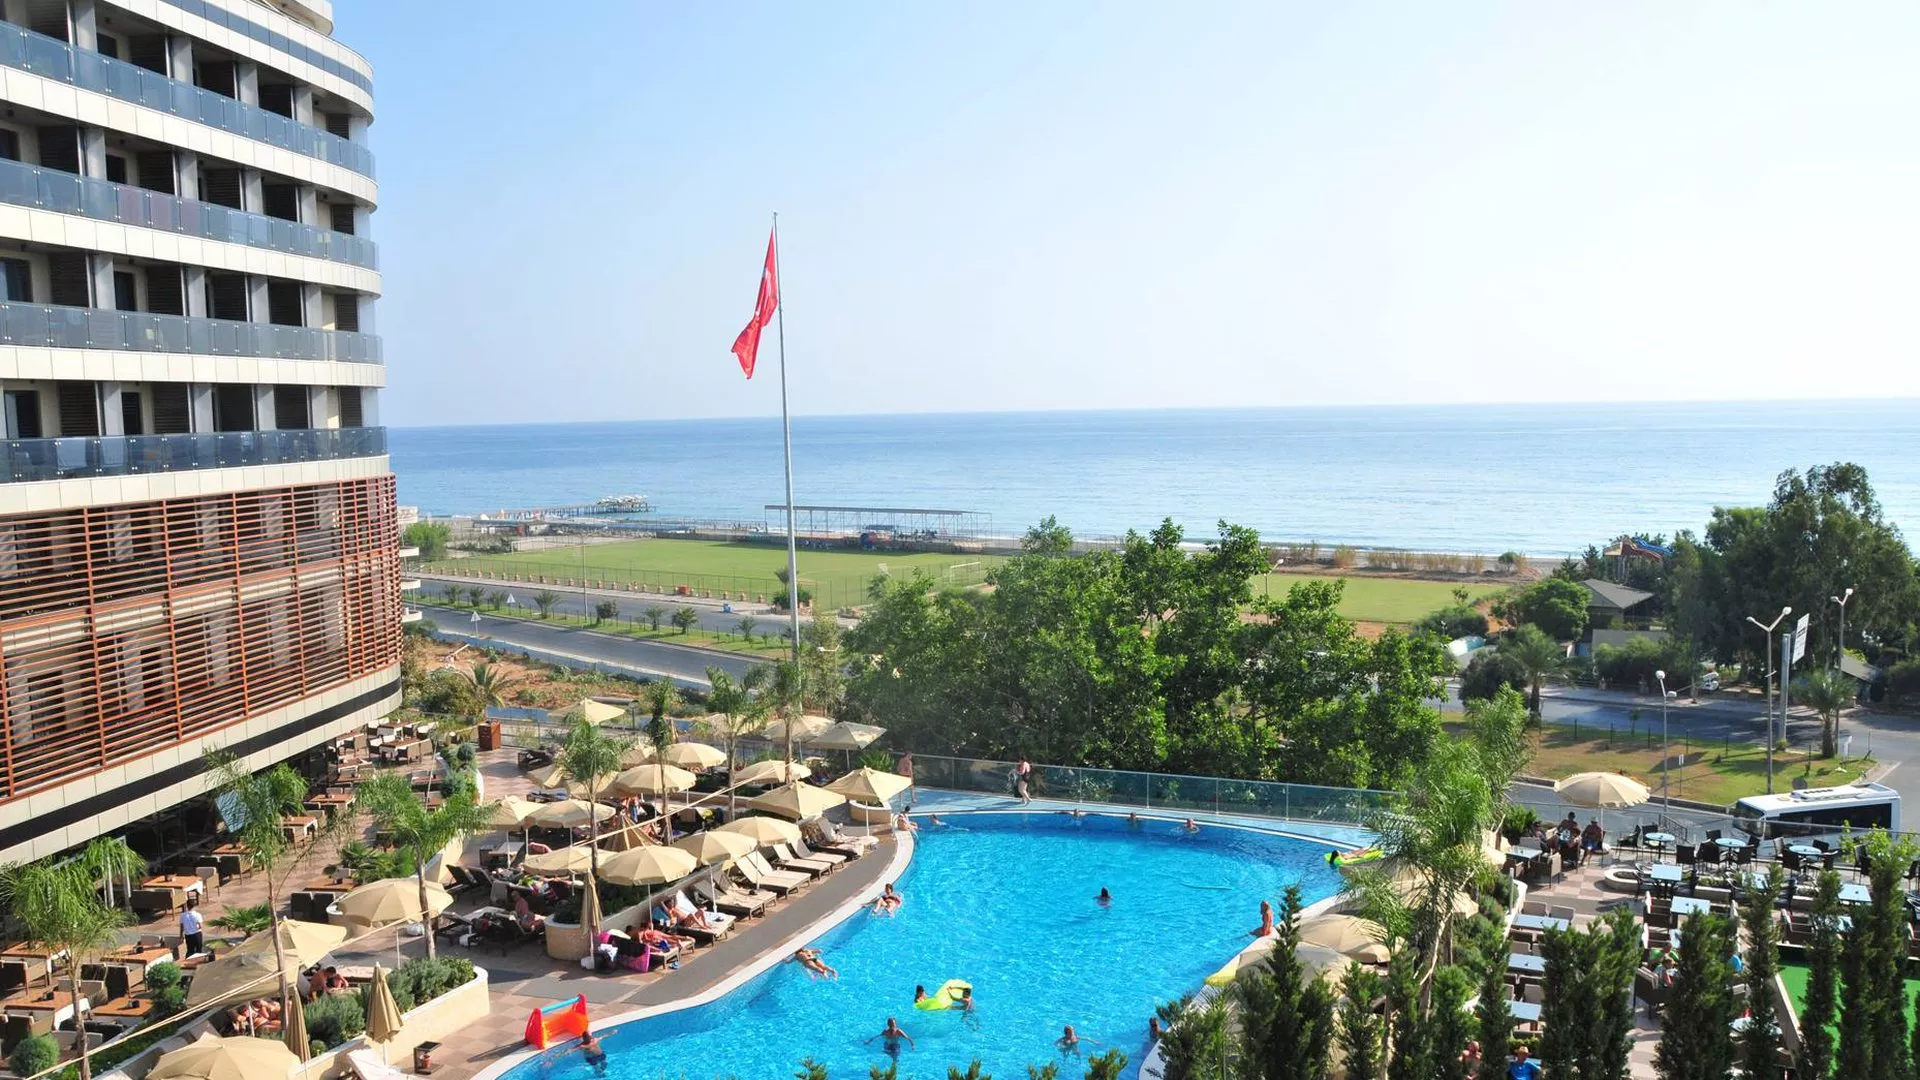 Viešbutis „Michell Hotel Spa Beach Club“ (Alanija, Turkija)